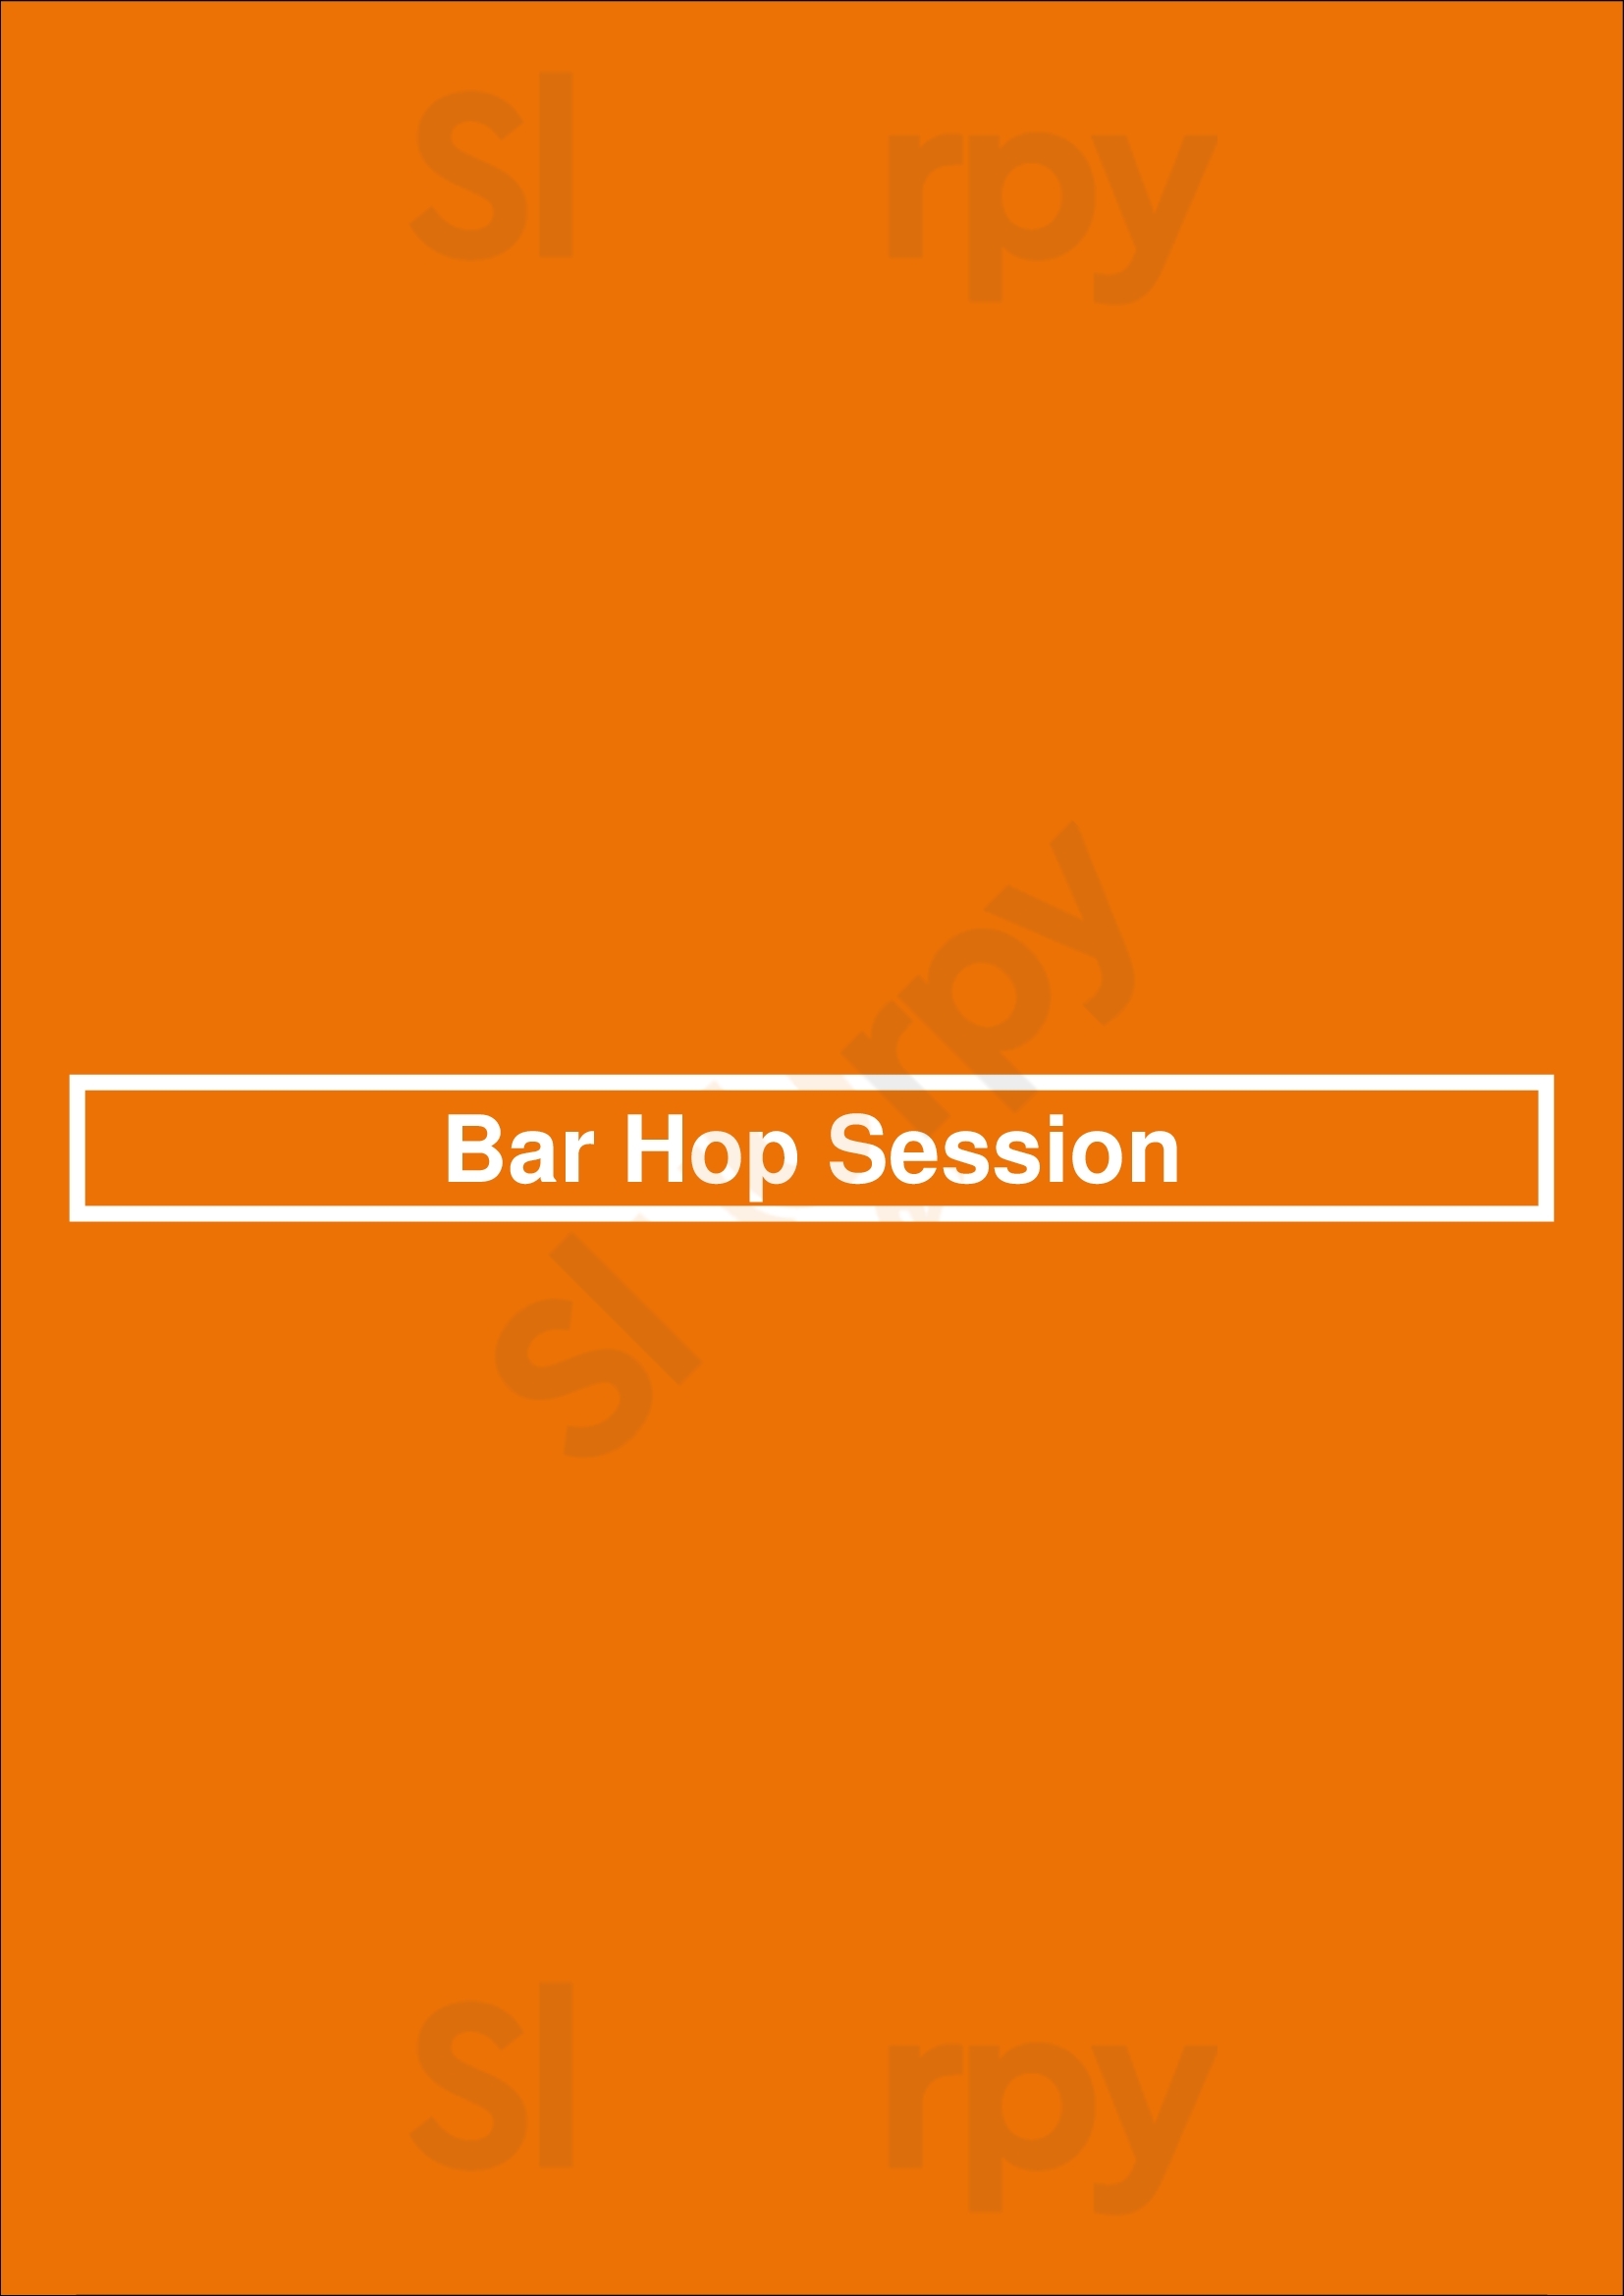 Bar Hop Session Toronto Menu - 1